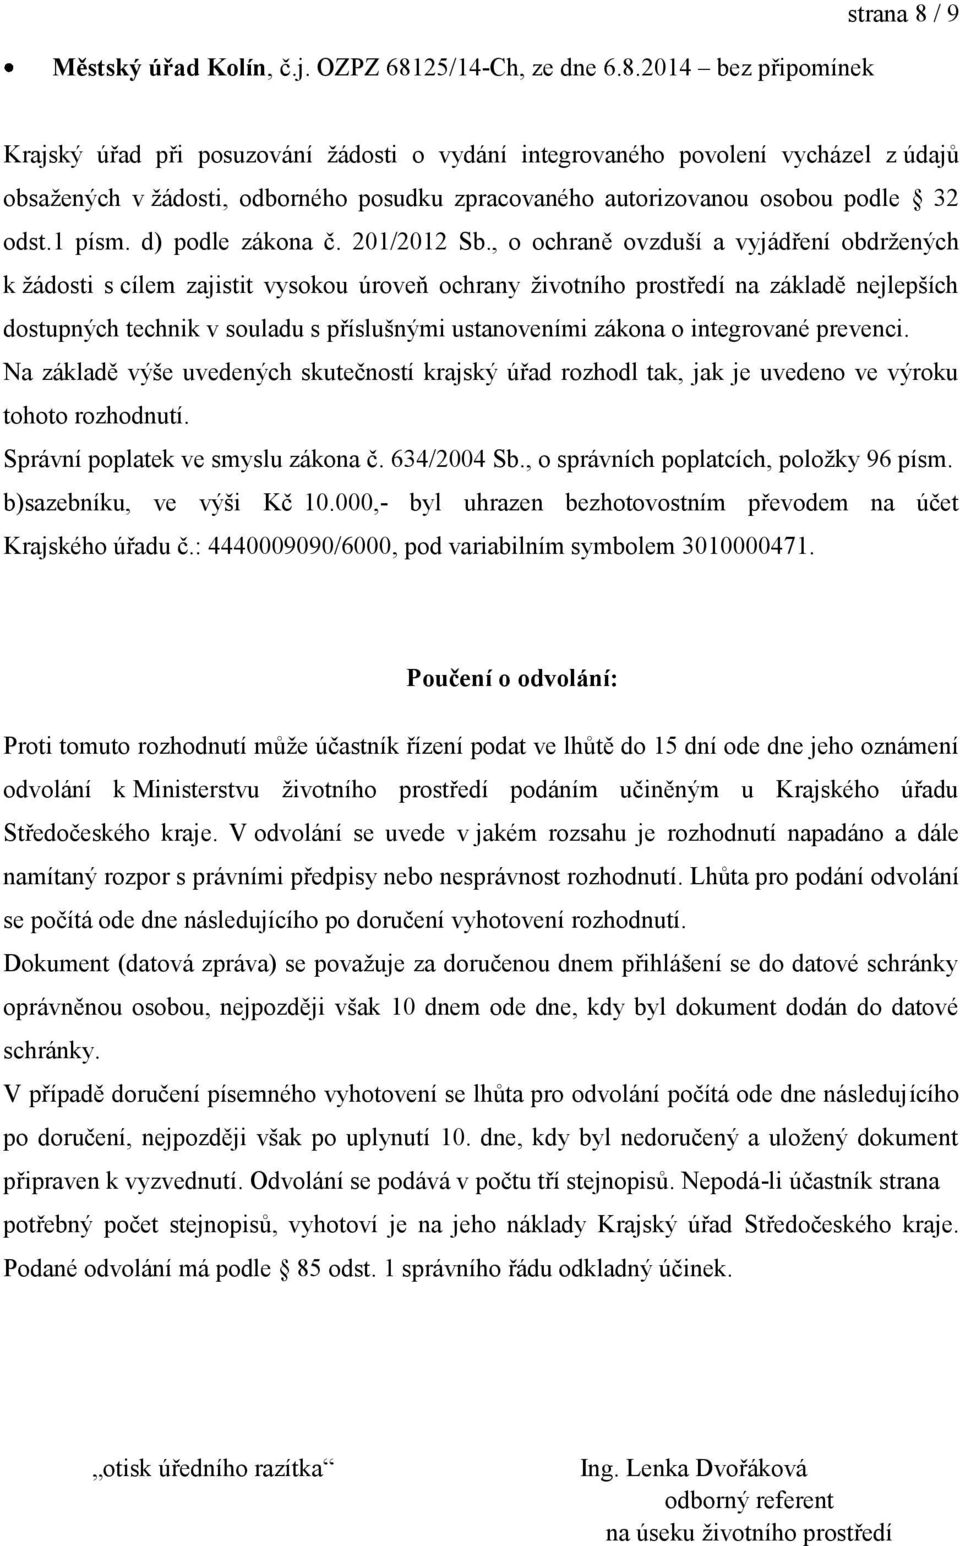 2014 bez připomínek strana 8 / 9 Krajský úřad při posuzování žádosti o vydání integrovaného povolení vycházel z údajů obsažených v žádosti, odborného posudku zpracovaného autorizovanou osobou podle